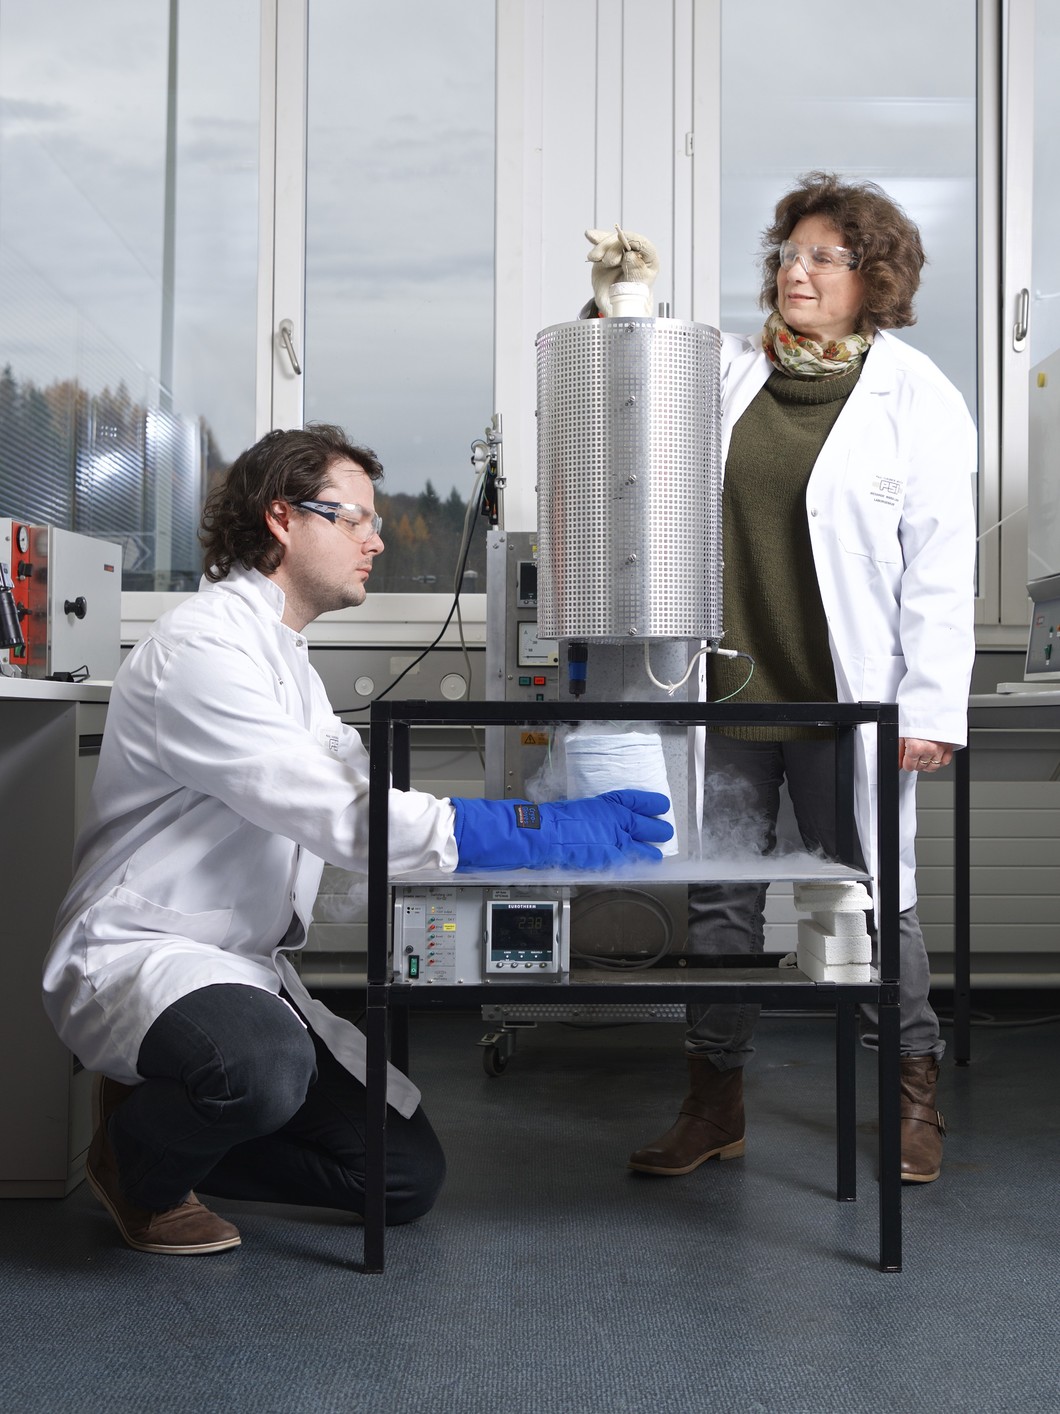 Mickaël Morin et Marisa Medarde, chercheurs au PSI, congèlent l’arrangement atomique du matériau multiferroïque YBaCuFeO5. L’échantillon de matériau est d’abord chauffé dans un four à 1000 degrés Celsius, avant d’être plongé dans un récipient rempli d’azote liquide à moins 200 degrés Celsius. (Photo: Institut Paul Scherrer/Markus Fischer)